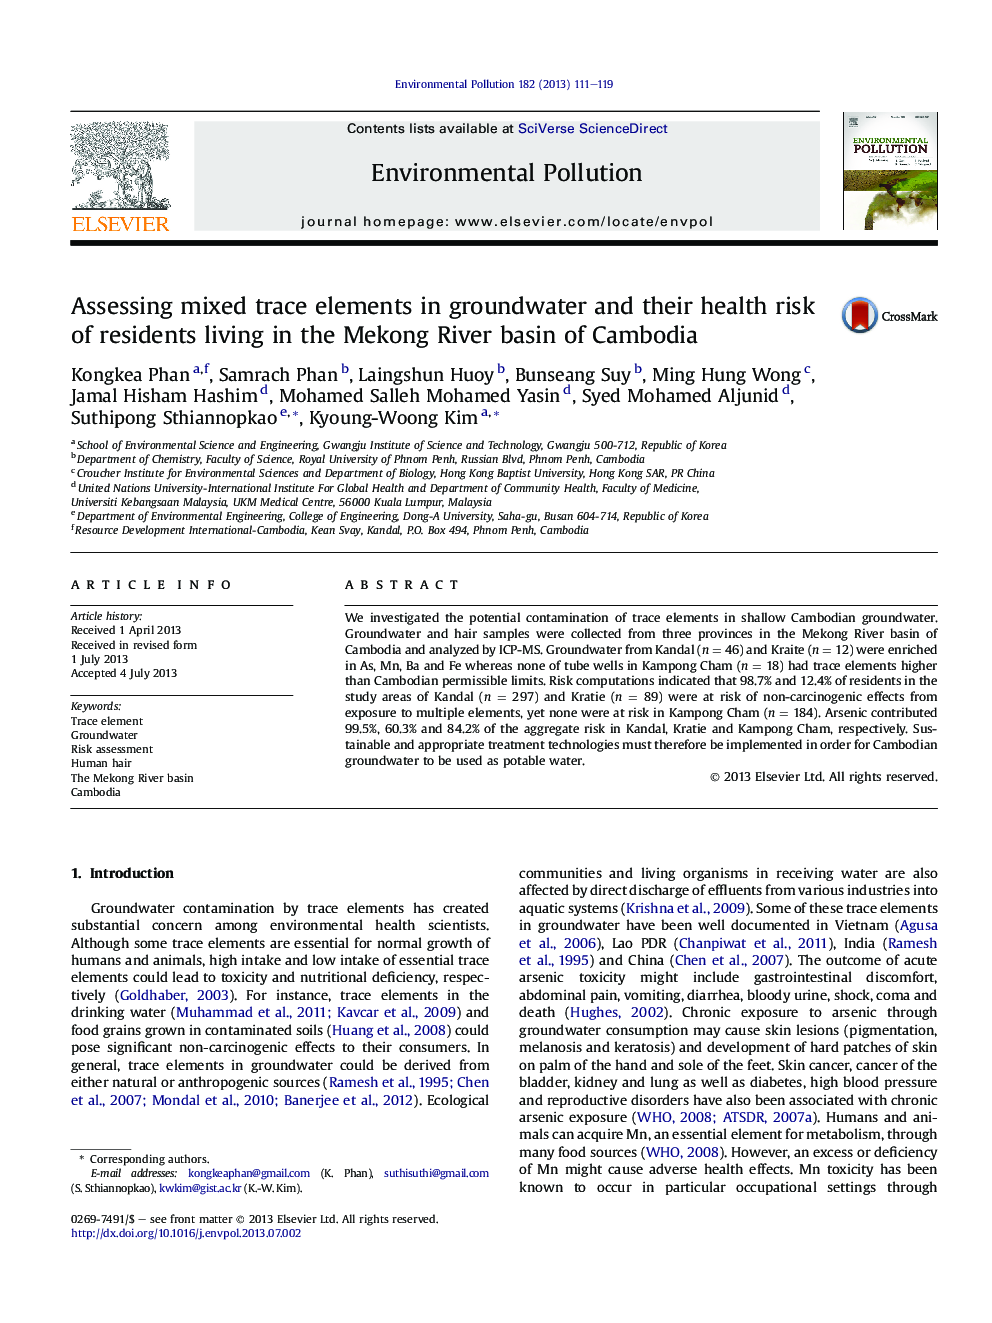 ارزیابی عناصر ترکیبی مخلوط در آبهای زیرزمینی و خطر سلامت آنها از ساکنان ساکن در حوضه رودخانه مکونگ کامبوج 